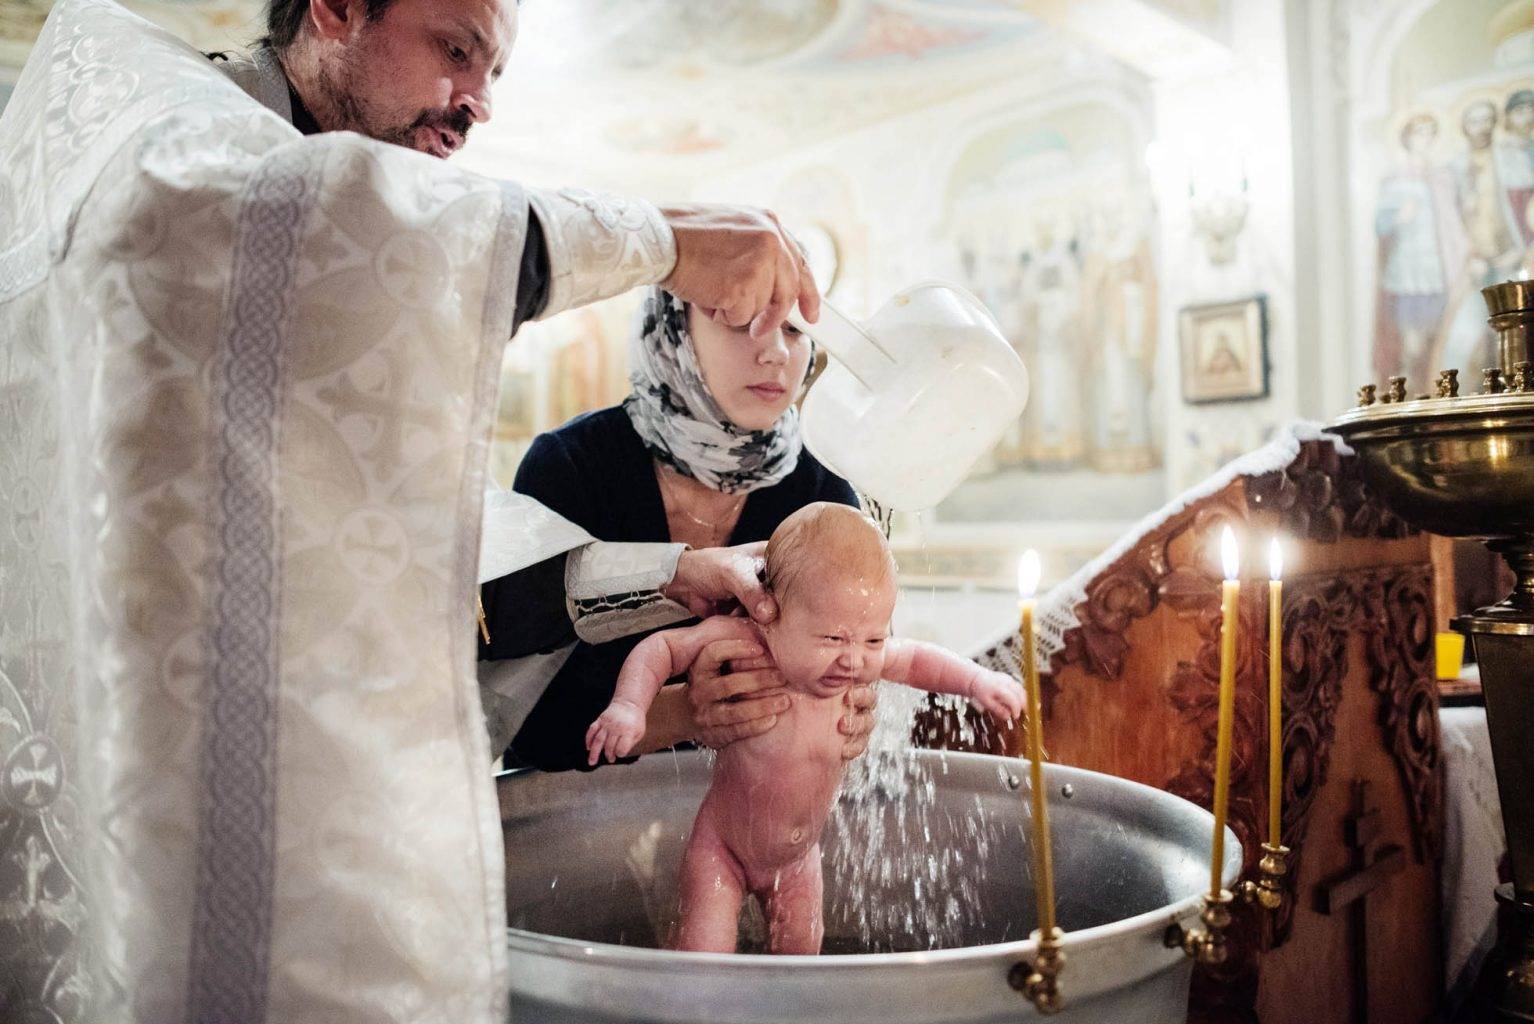 Крещение ребенка: правила, рекомендации, практические советы